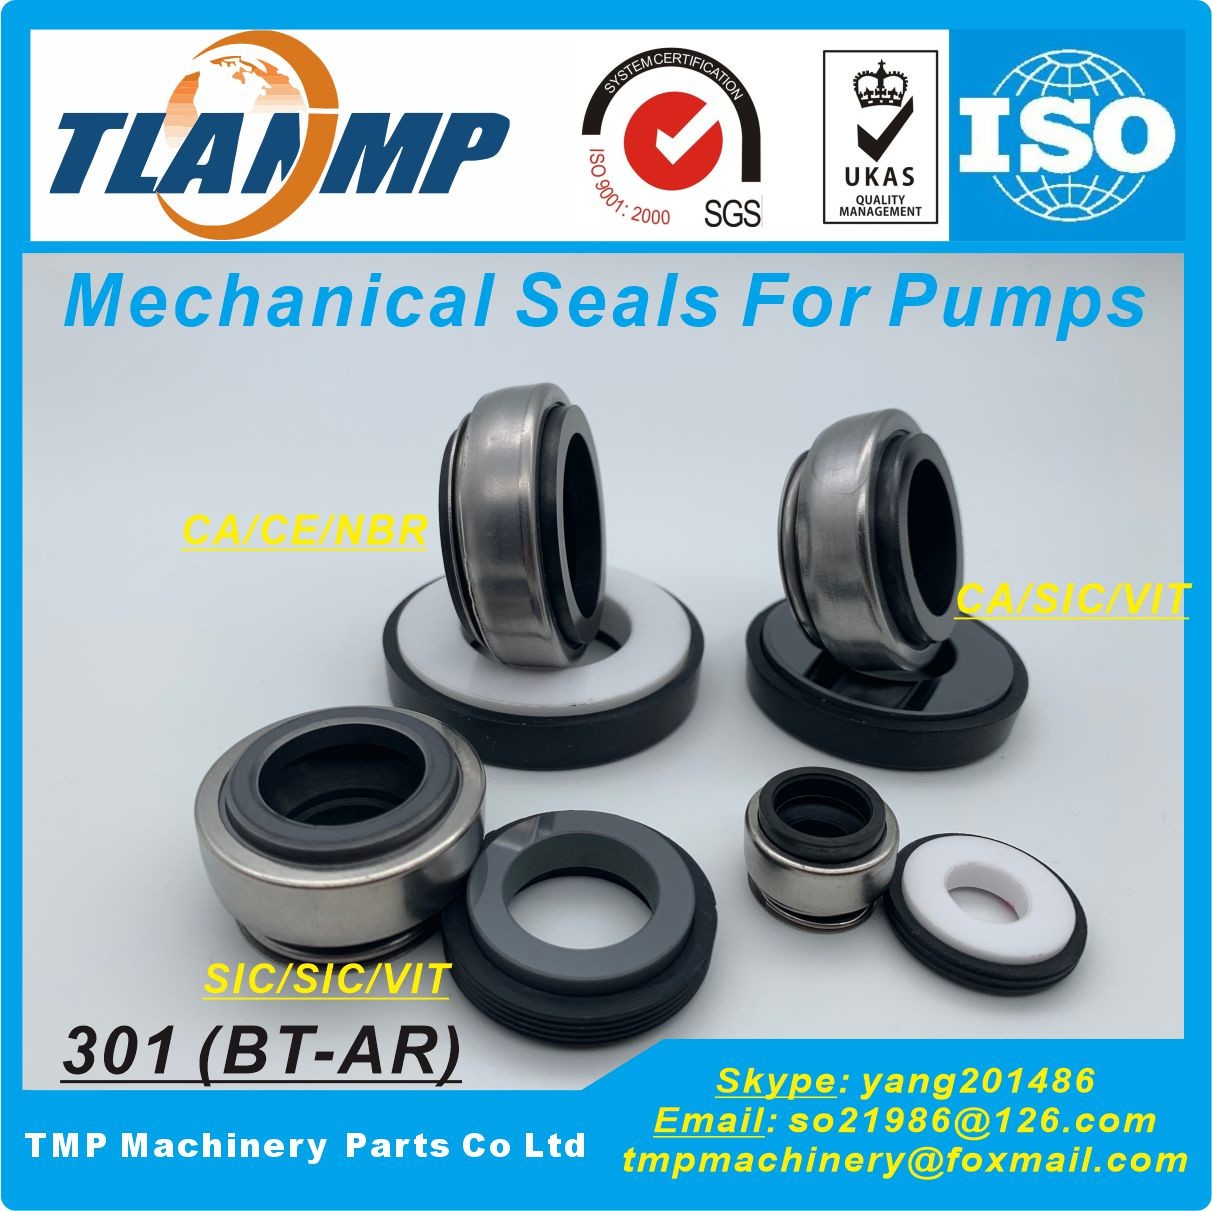 301-14 , 301-14L , 301-14/G6 ( BT-AR-14 ) Mechanical Seals ,BT-AR Seals For Speck BETTAR, BADU TOP II pumps